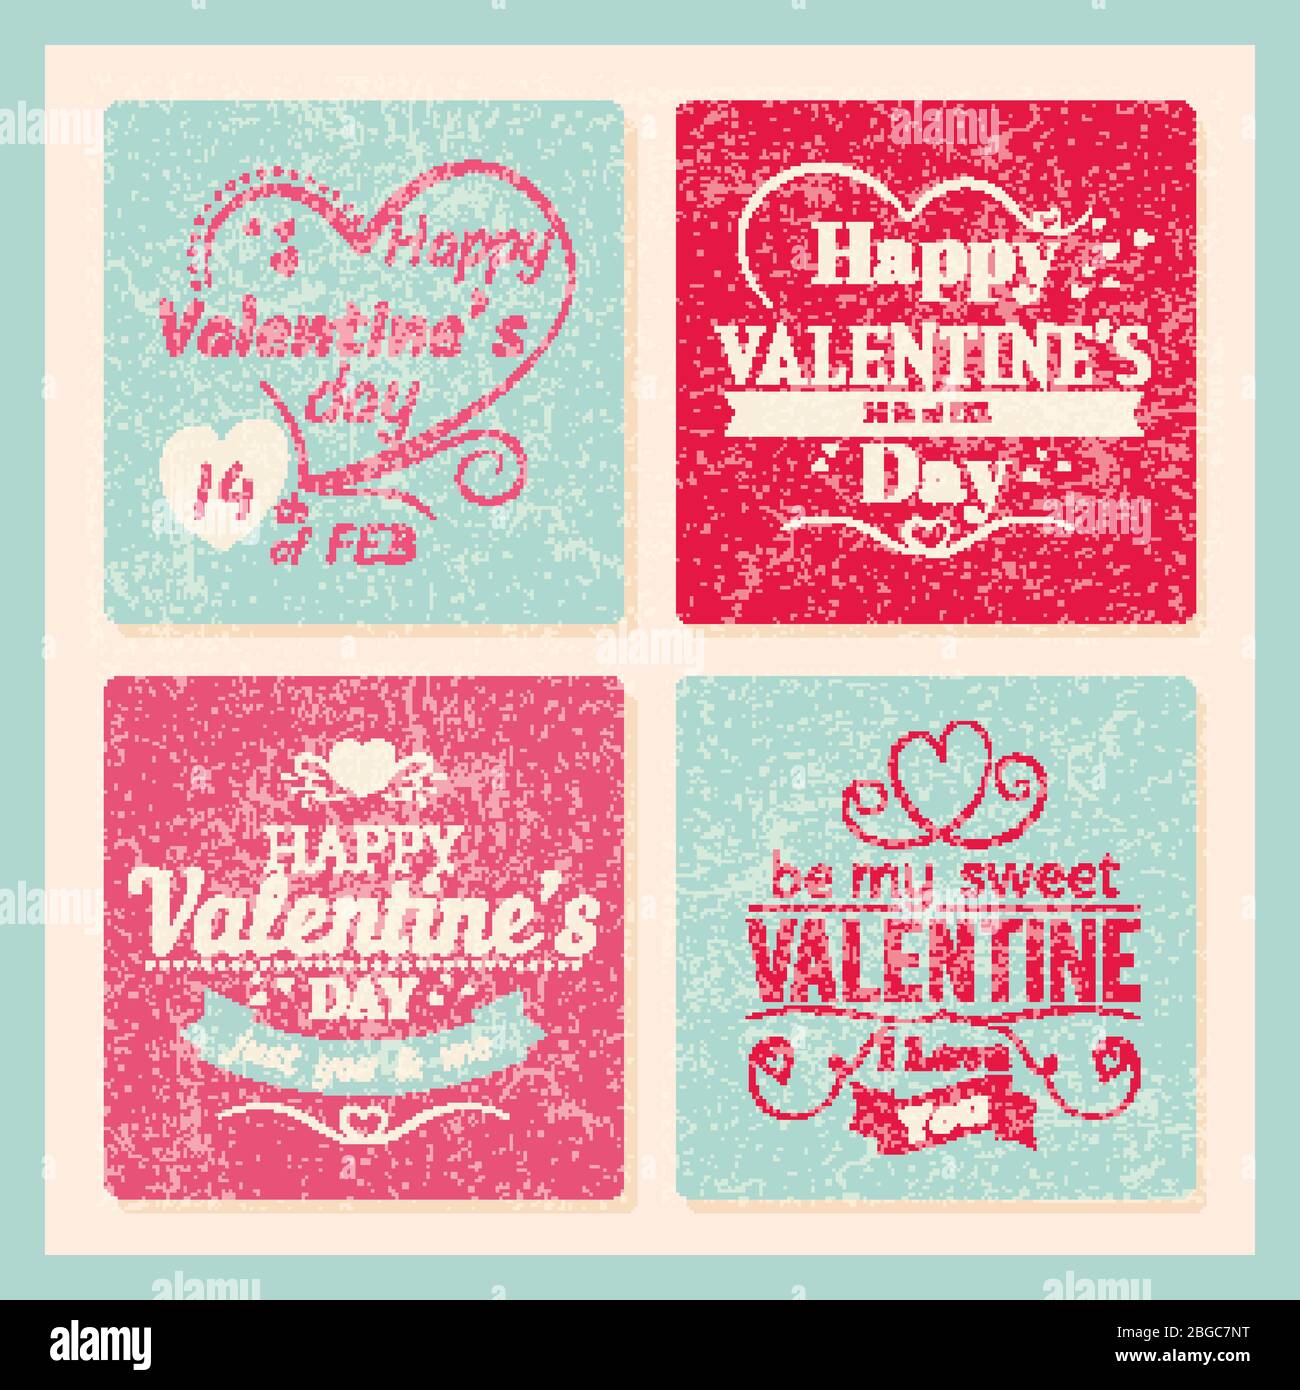 Bunte Valentinstag Grunge Karten Vorlage mit Typografie Zeichen und Herzen. Valentine liebe Grunge Poster romantische Banner Gruß. Vektorgrafik Stock Vektor